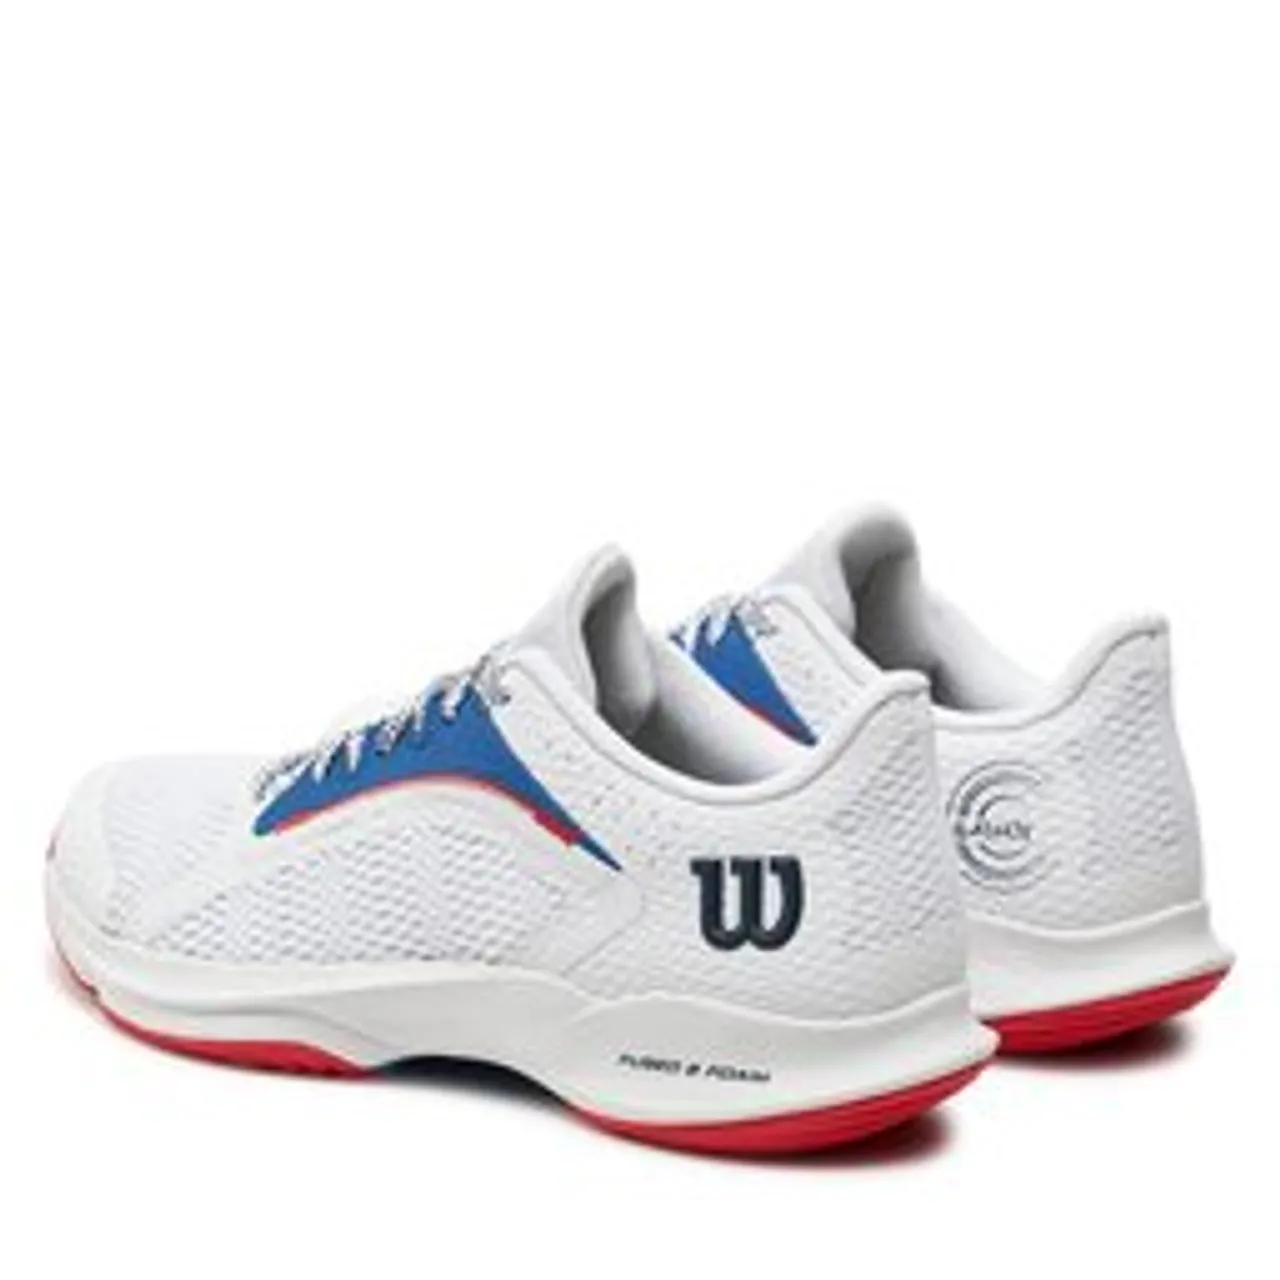 Schuhe Wilson Hurakn 2.0 WRS331660 White/D V Blue/Wilson Red